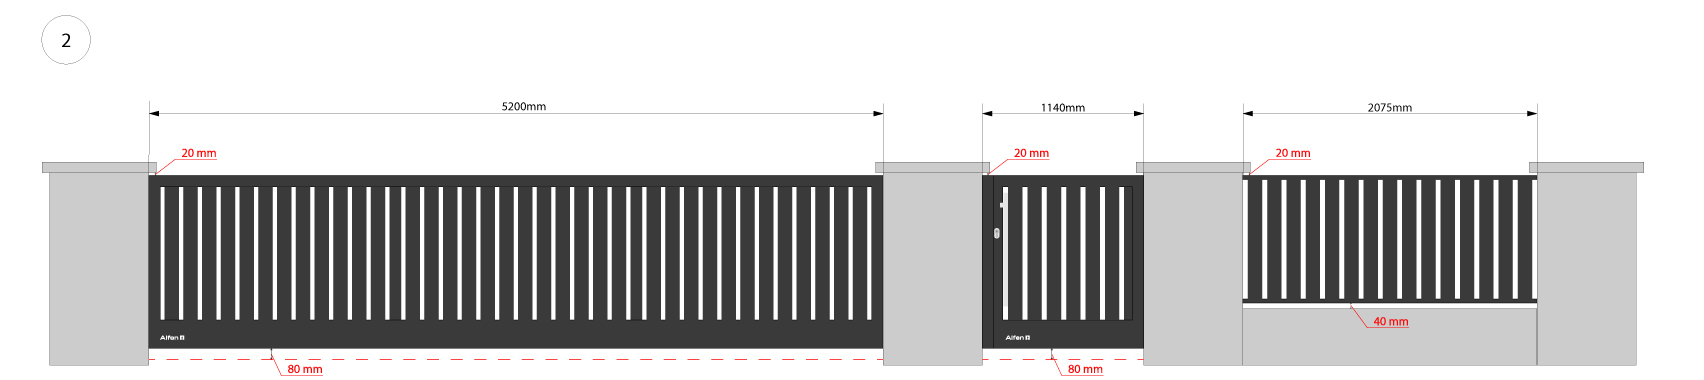 wizualizacja ogrodzenia R03 2D rzut